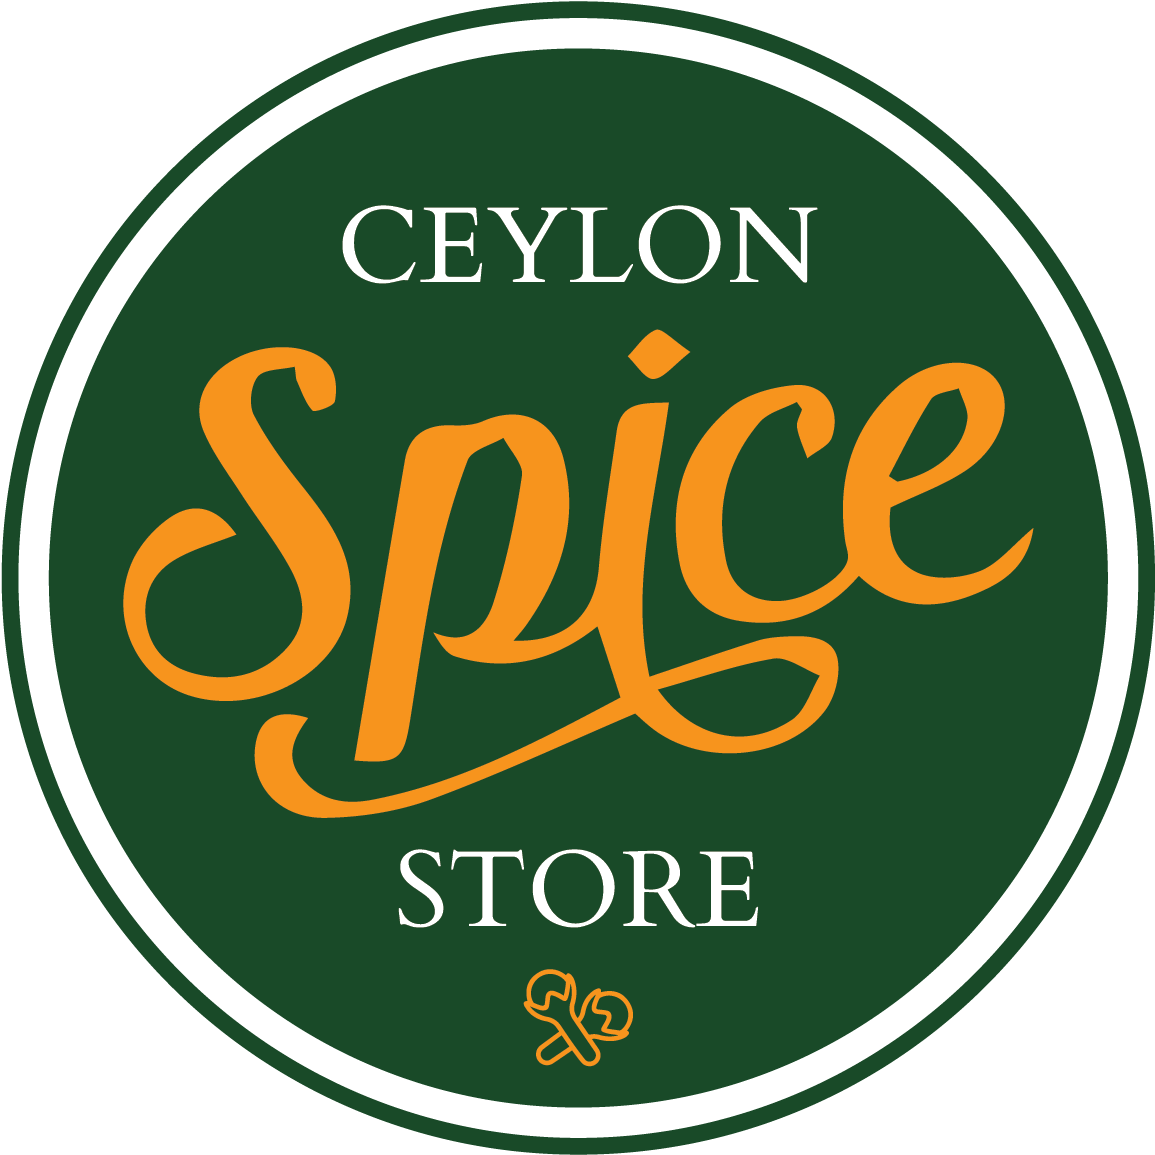 Ceylon Spice Store Circular Logo